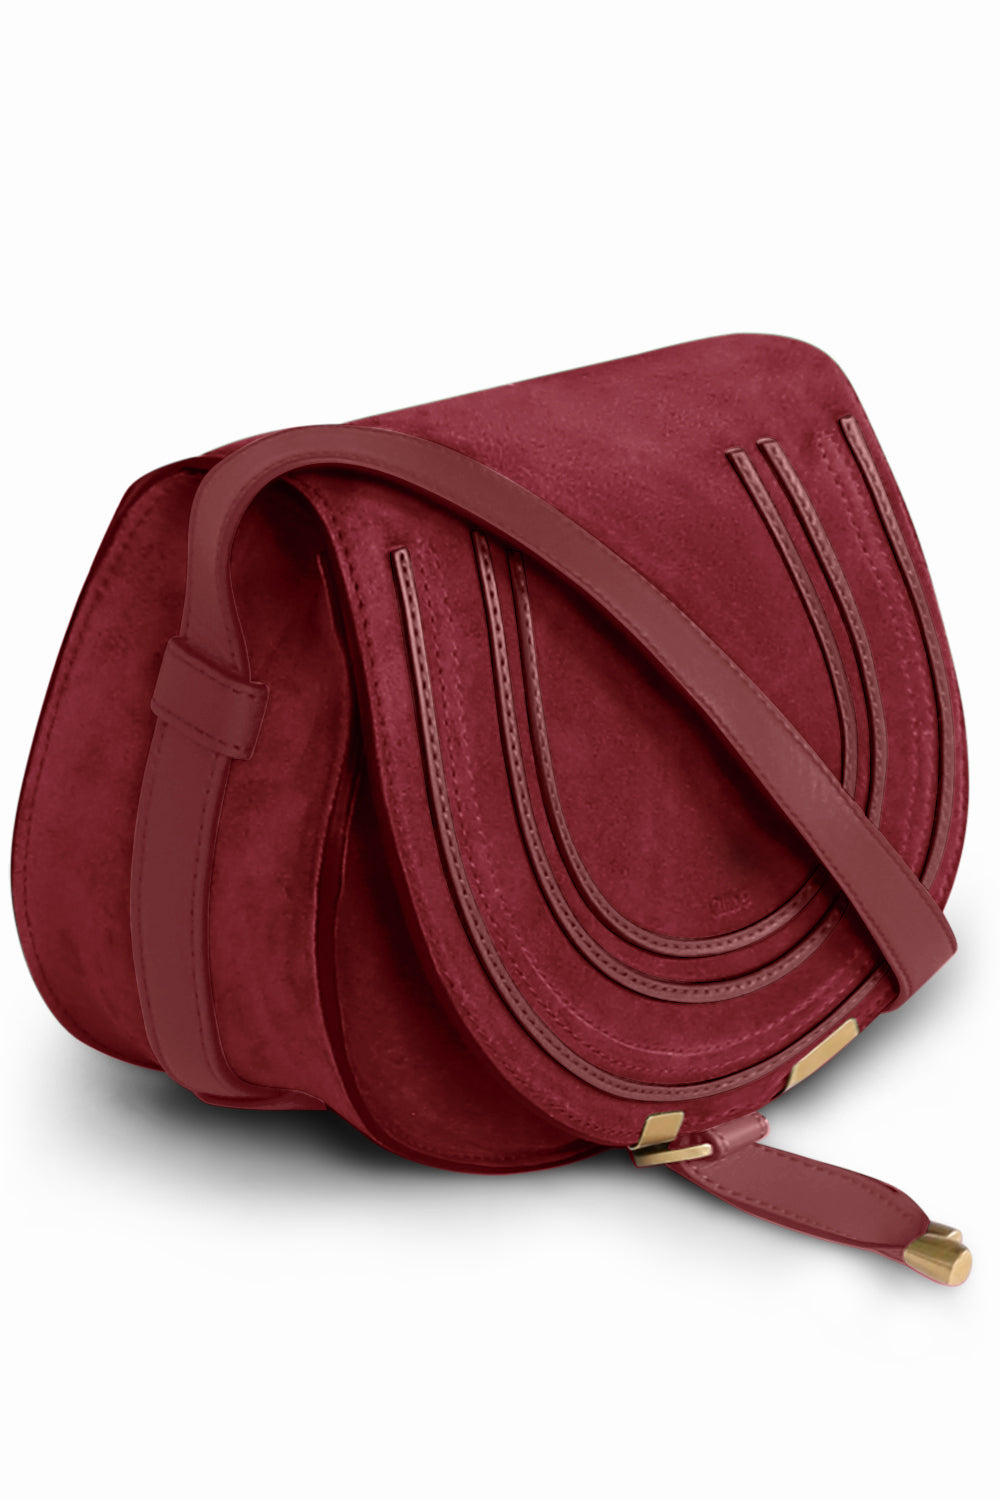 CHLOE BAGS RED MARCIE SMALL BAG | DARK RUBY SUEDE